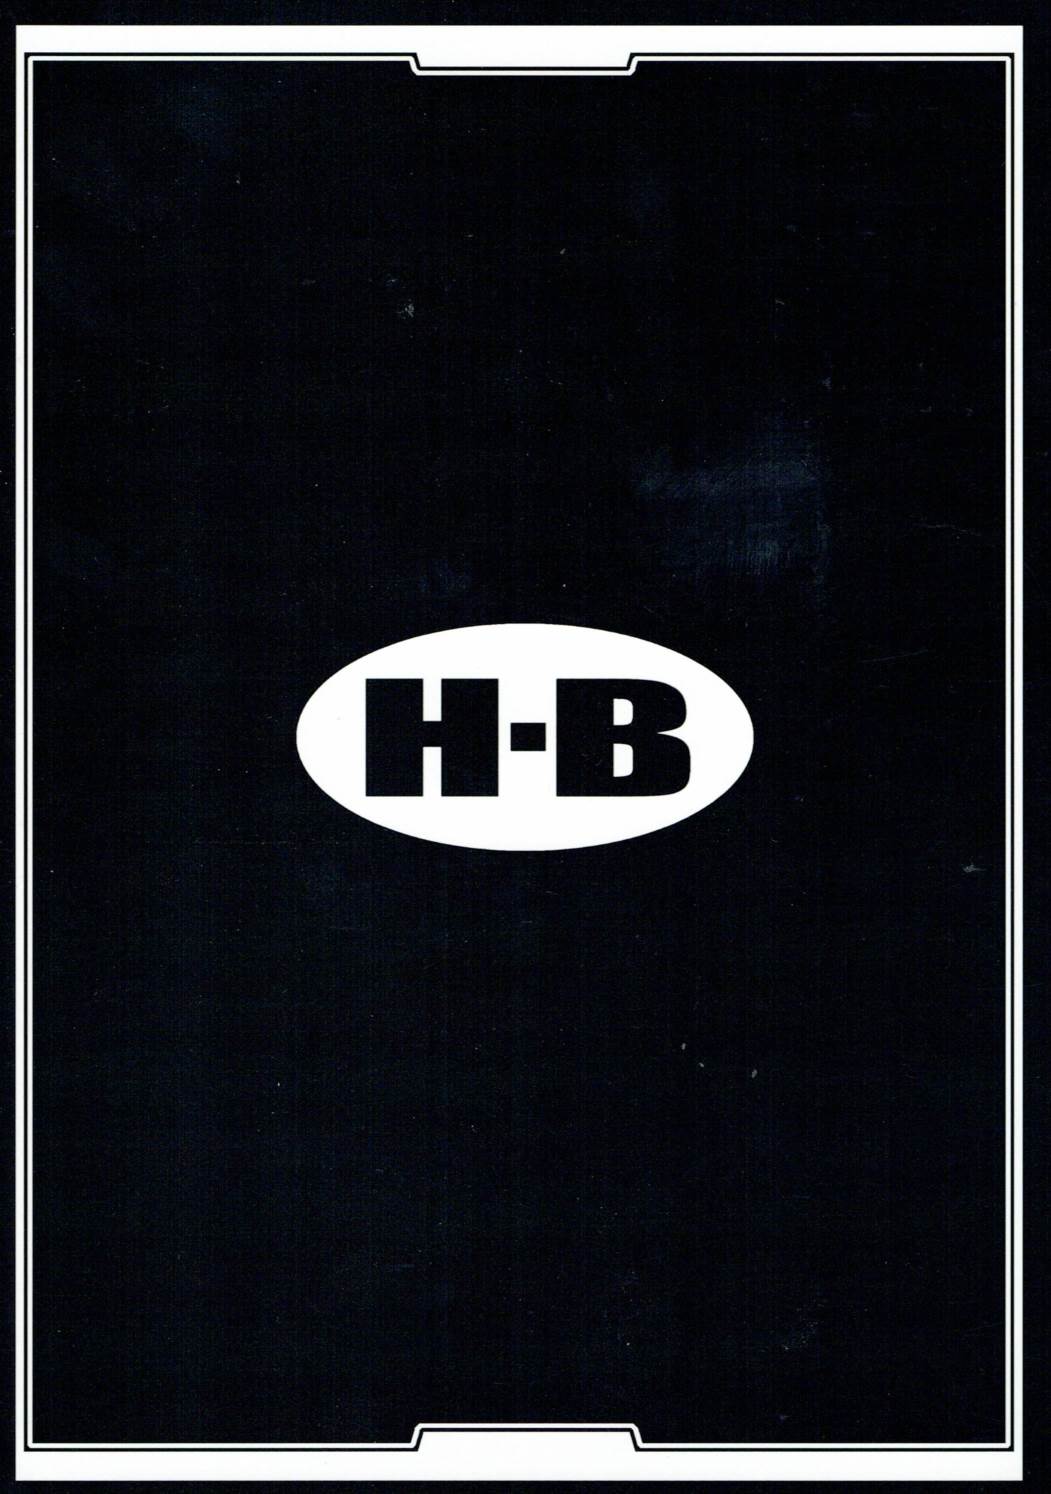 H.B e.t.c vol.5